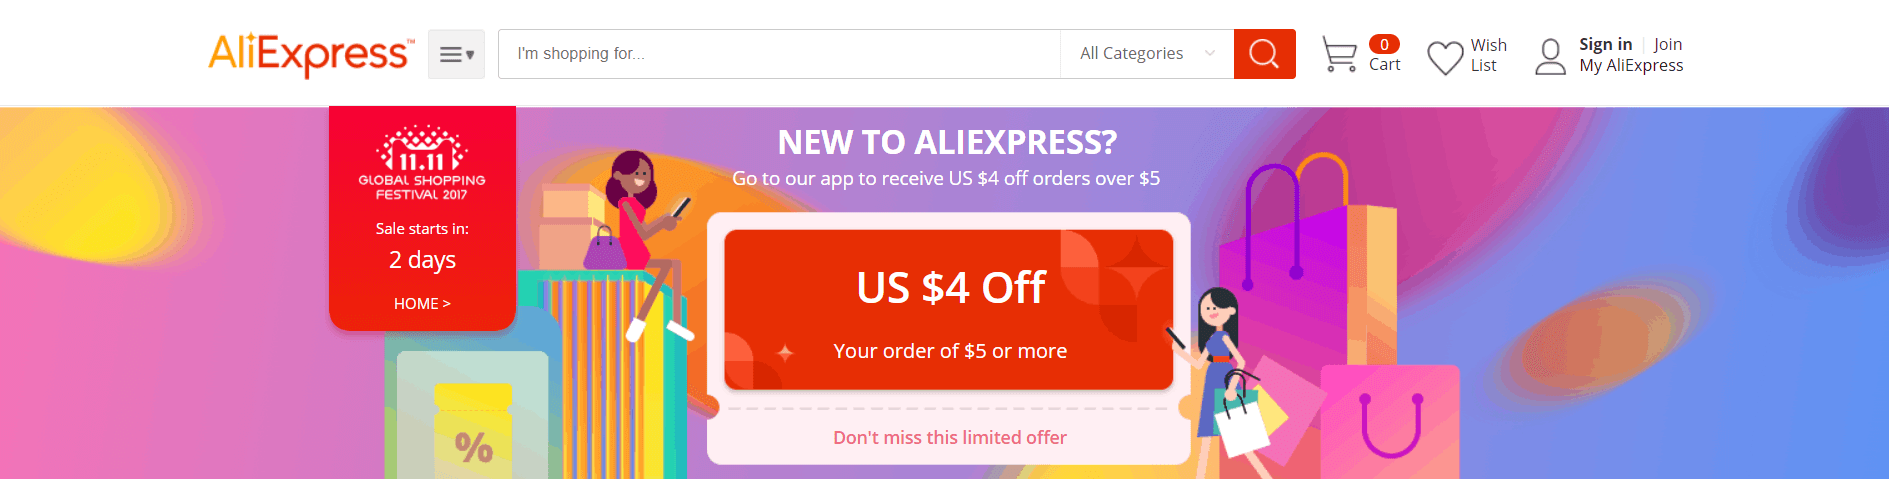 В конце прошлого месяца мы сообщили вам, что   PayU подписал контракт с AliExpress   ,  Платежному оператору не нужно было слишком много времени, чтобы начать поощрять пользователей - было продвижение, которое дало бы вам 4 доллара